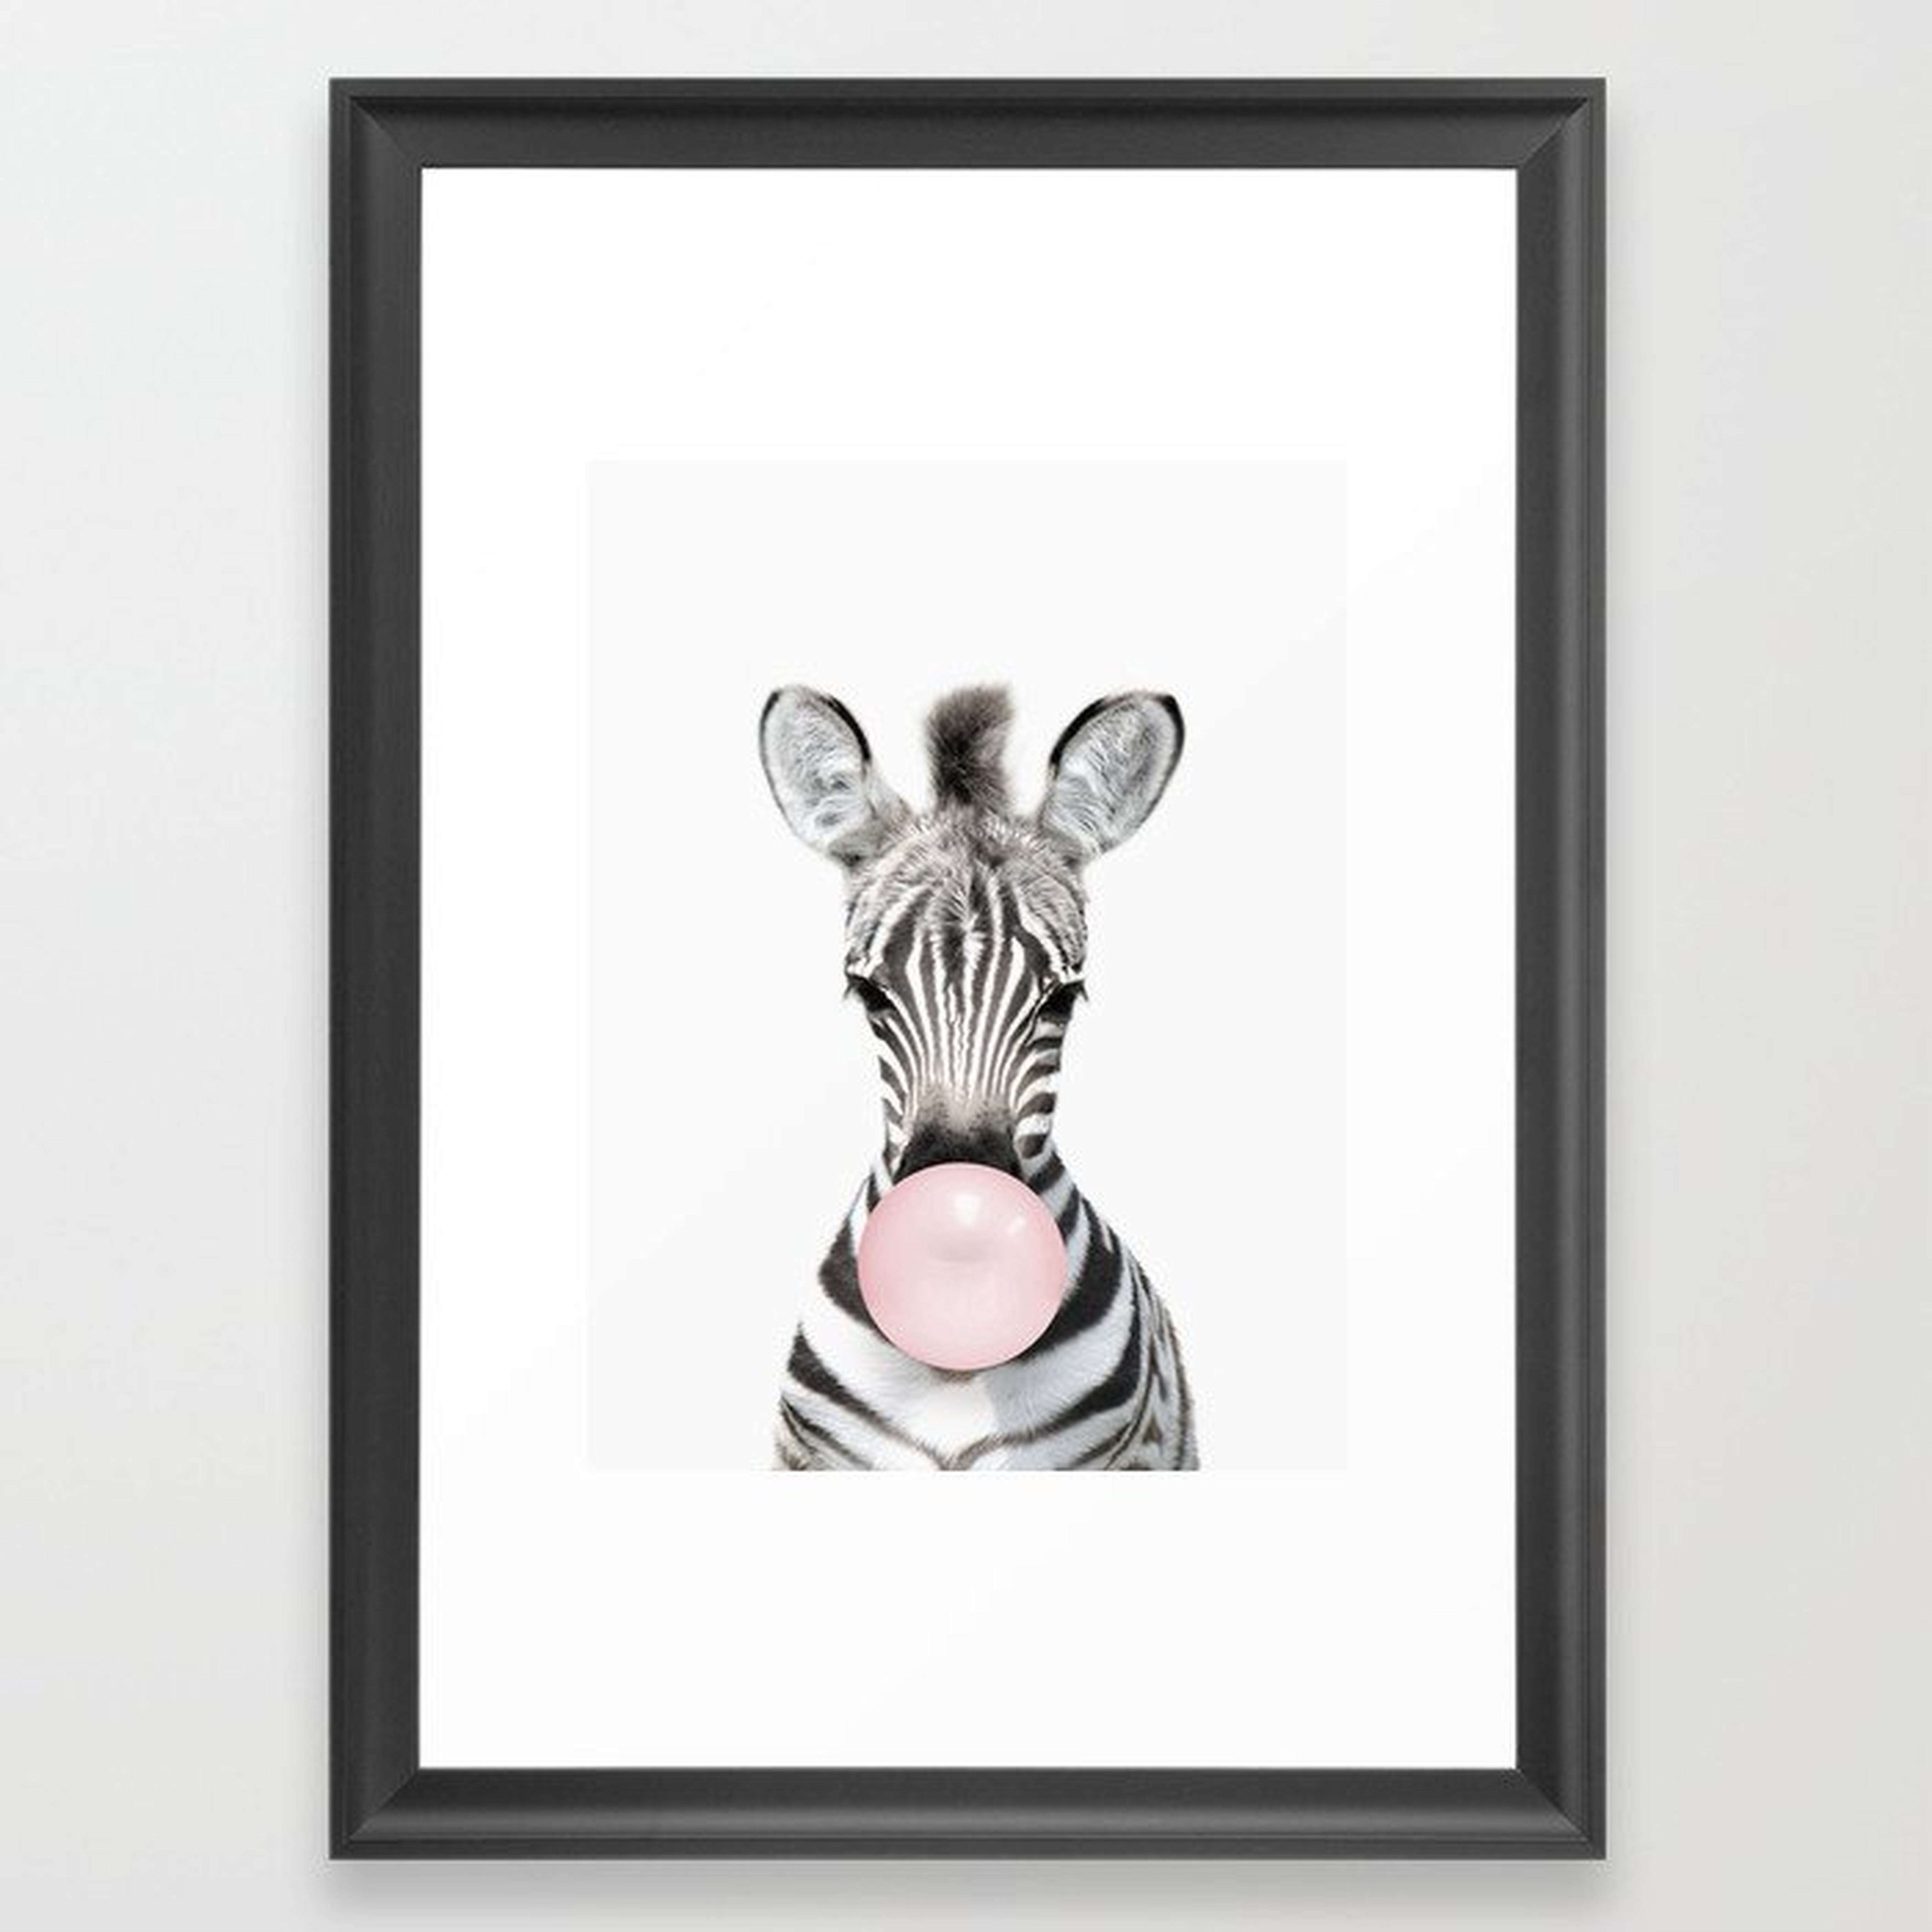 Bubble Gum Zebra Framed Art Print - 15"x21" - Scoop Black - Society6